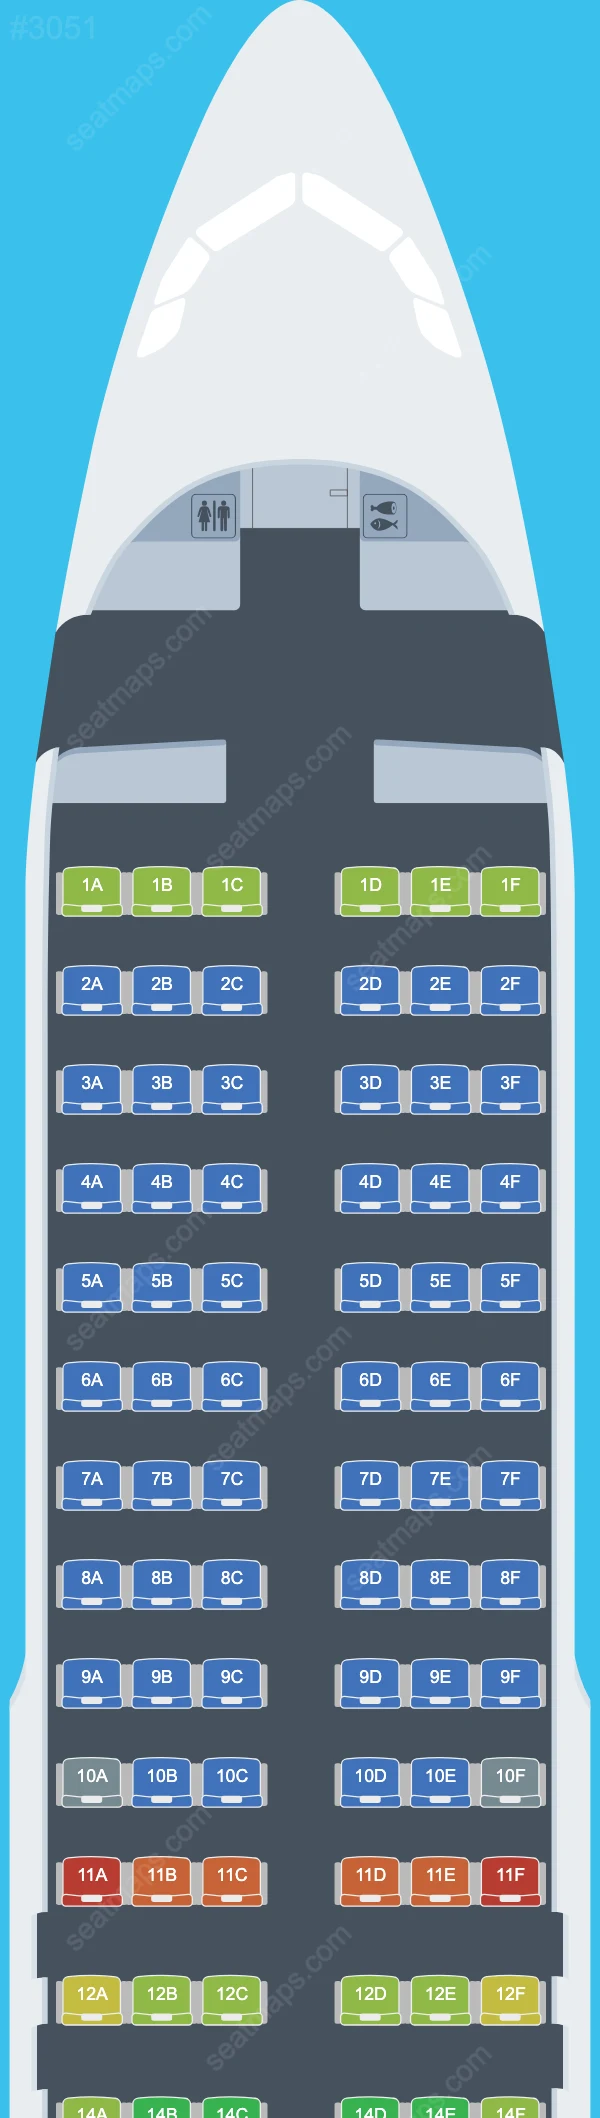 Cebu Pacific Air Airbus A320 Seat Maps A320-200